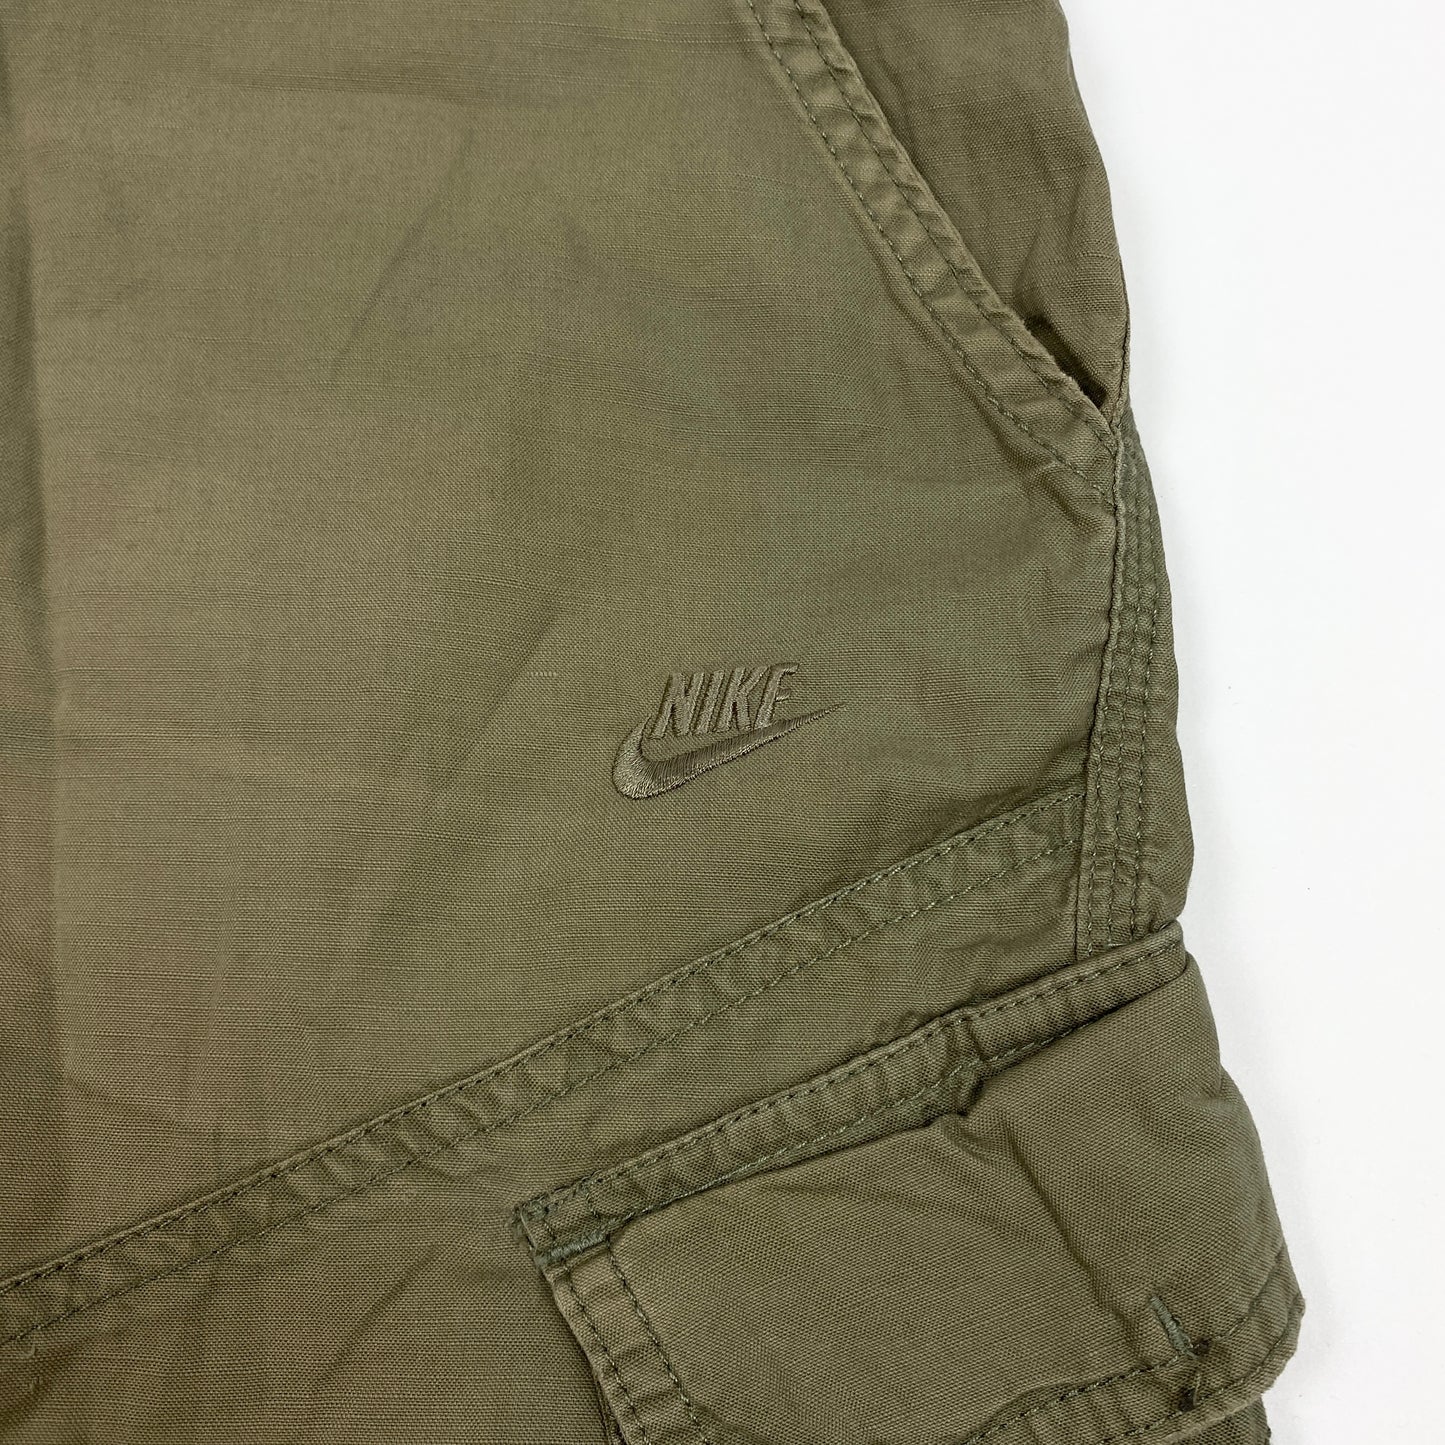 Vintage NIKE Cargo Shorts